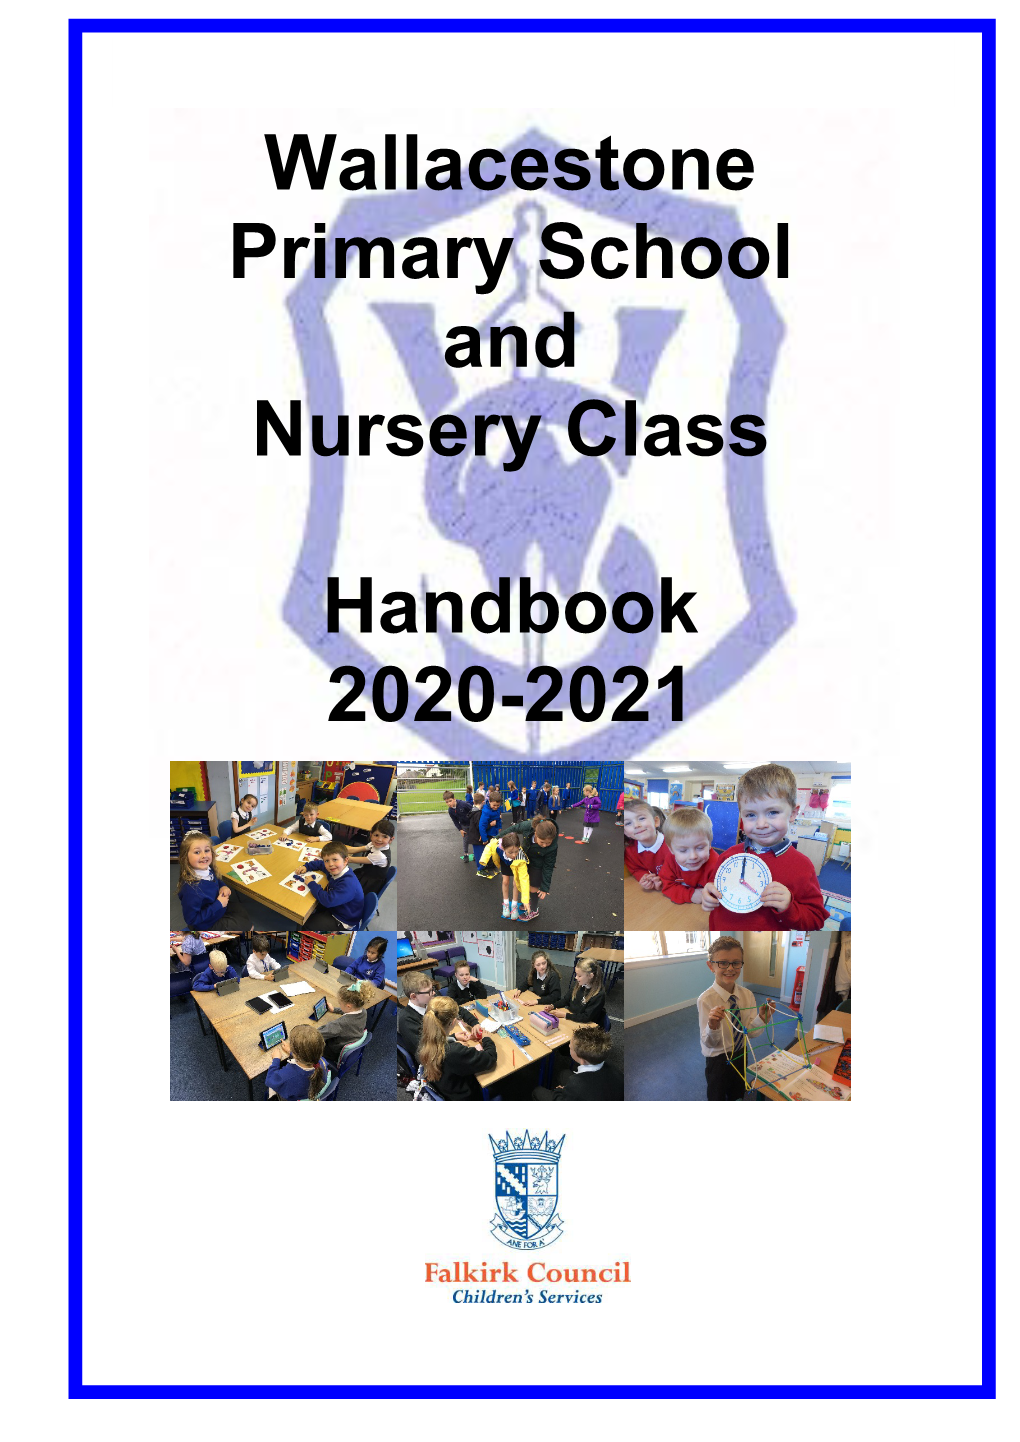 Wallacestone Primary School Handbook 2020-21